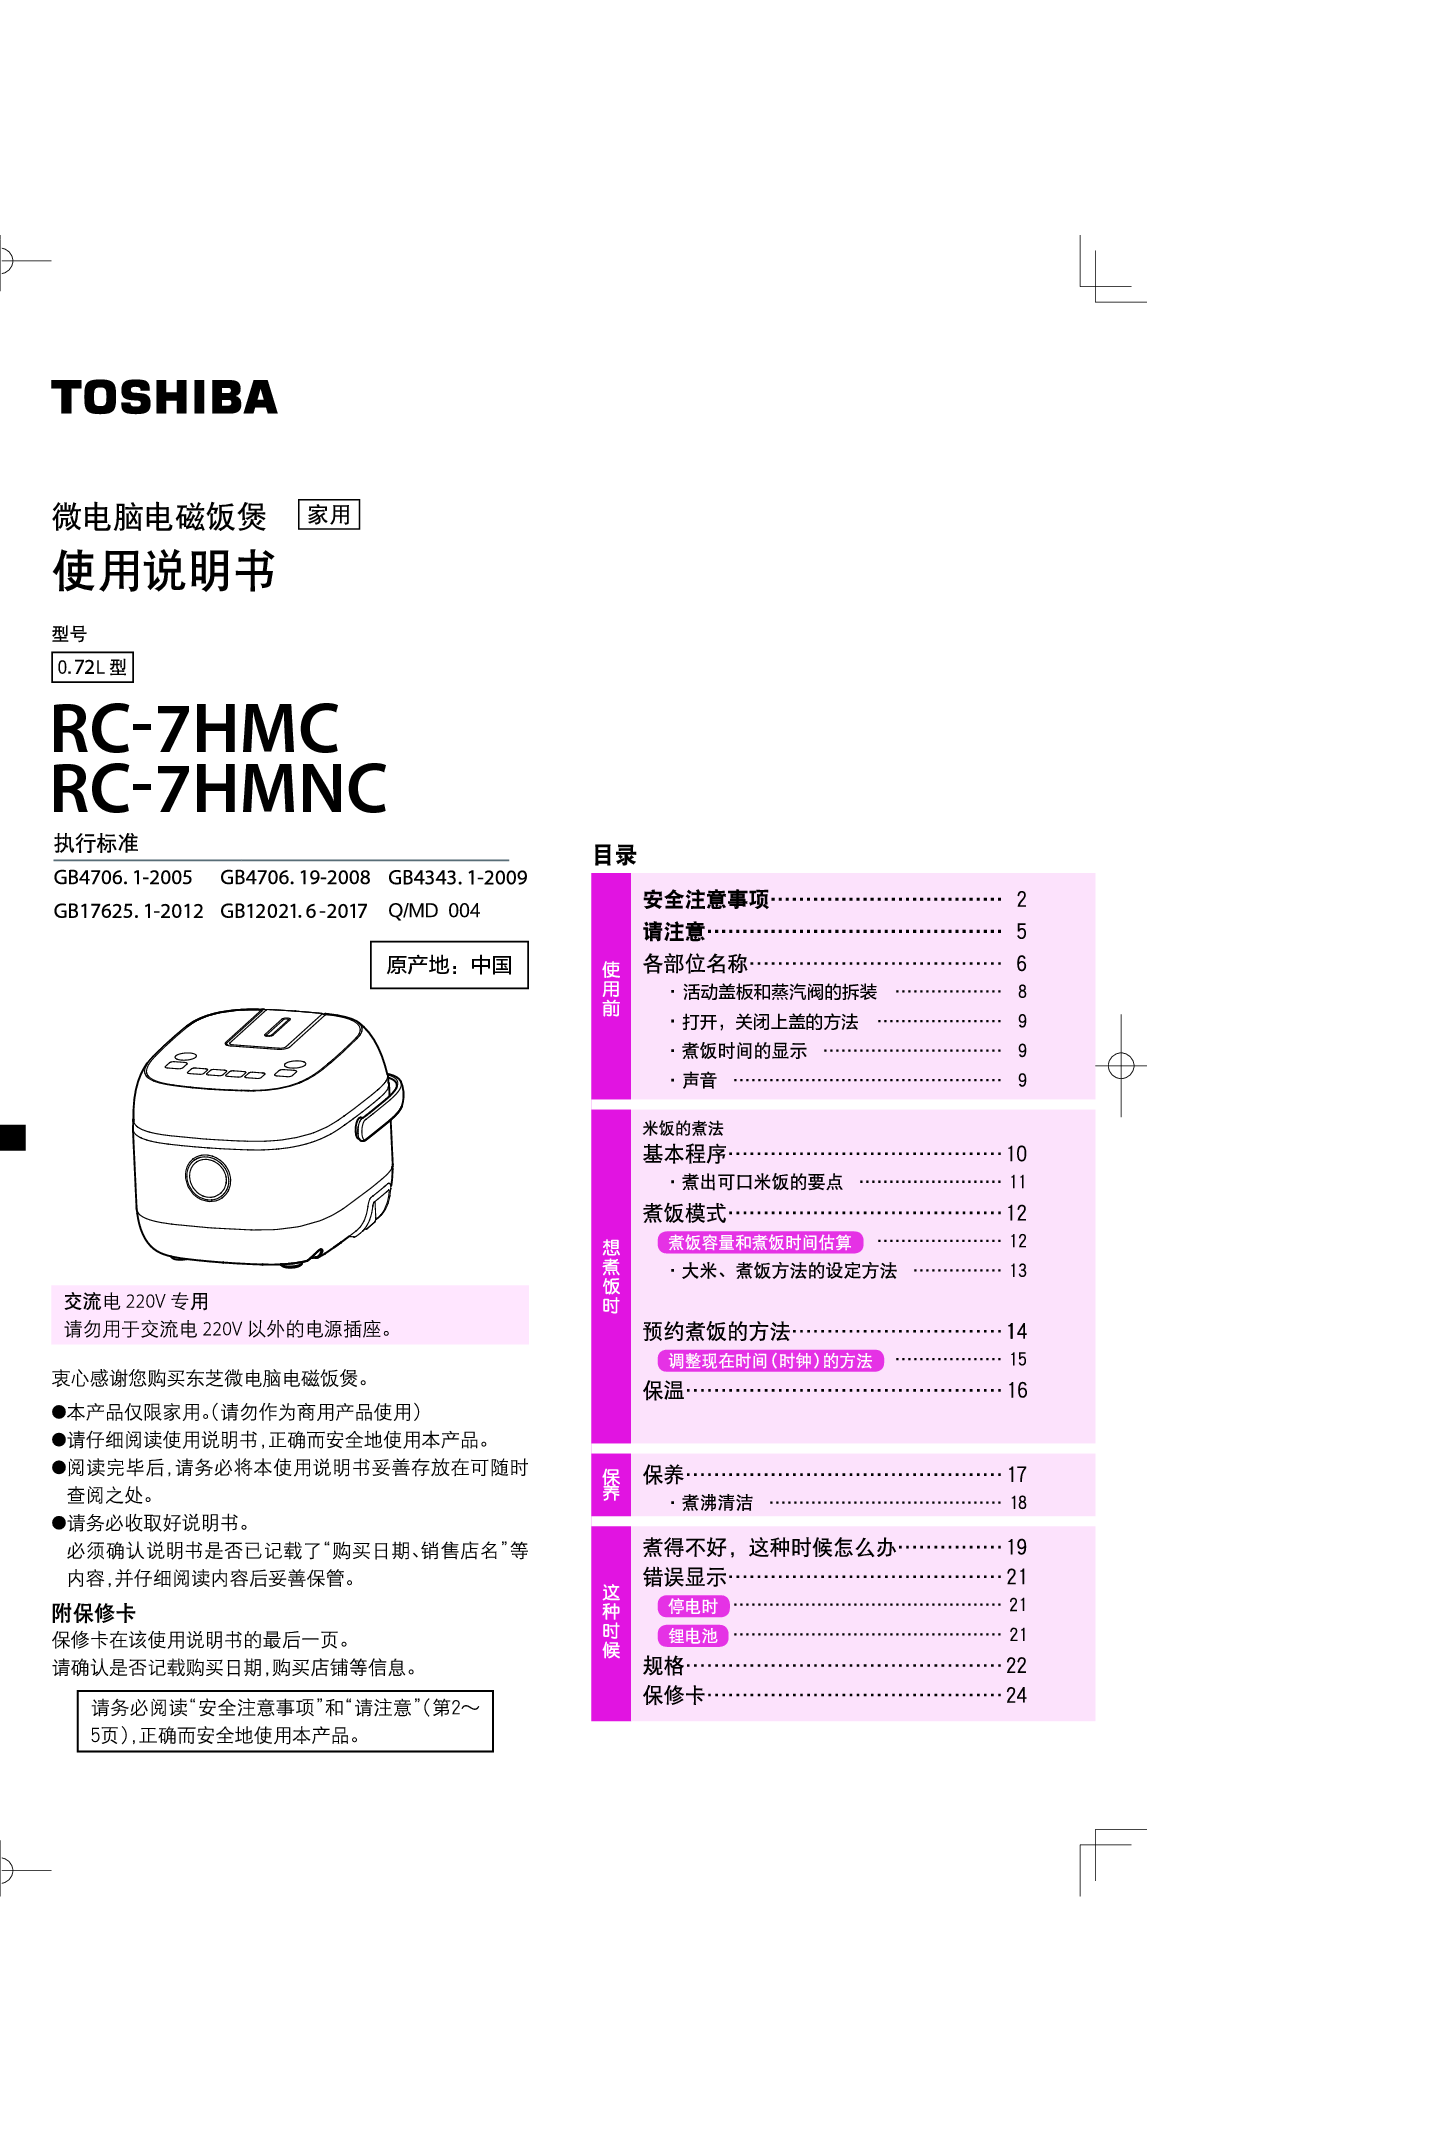 东芝 Toshiba RC-7HMC 使用说明书 封面